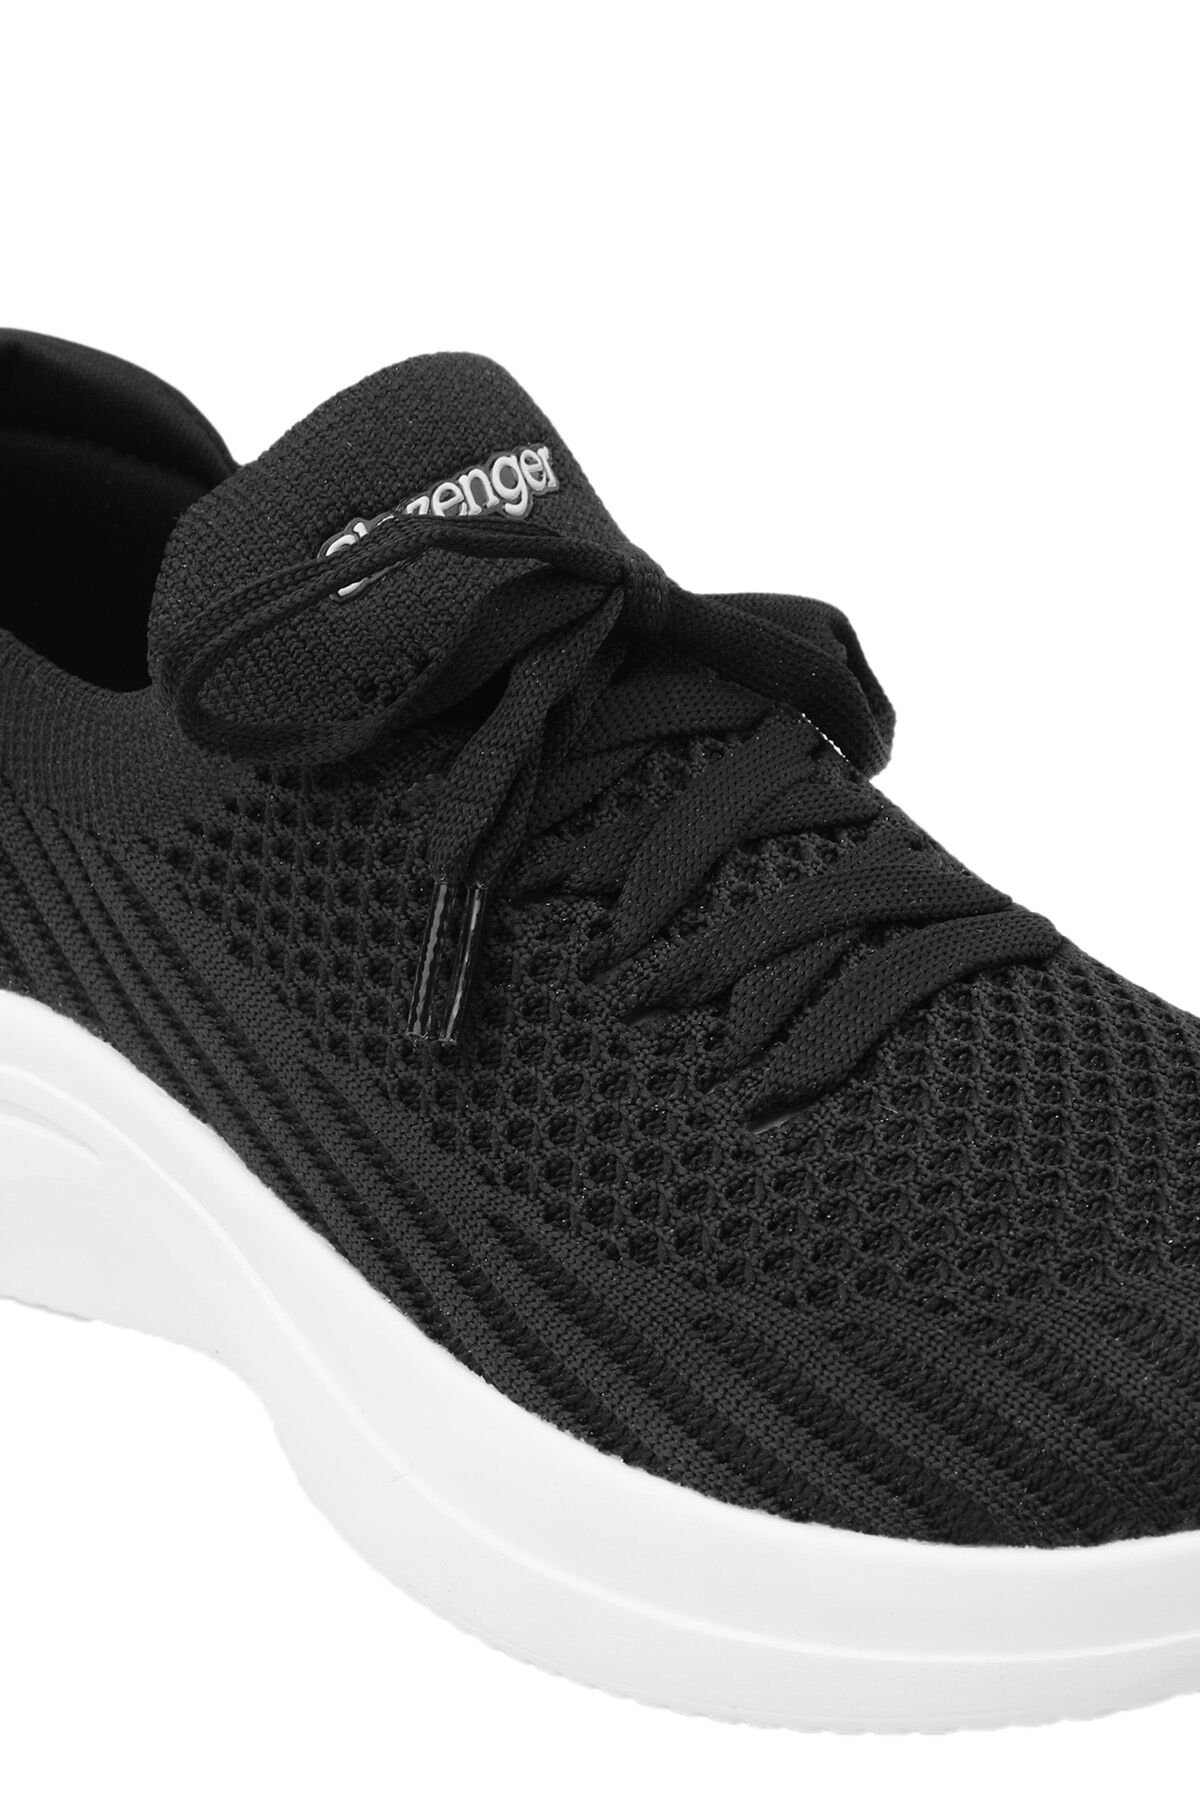 Slazenger ACCOUNT Sneaker Kadın Ayakkabı Siyah / Beyaz - Thumbnail